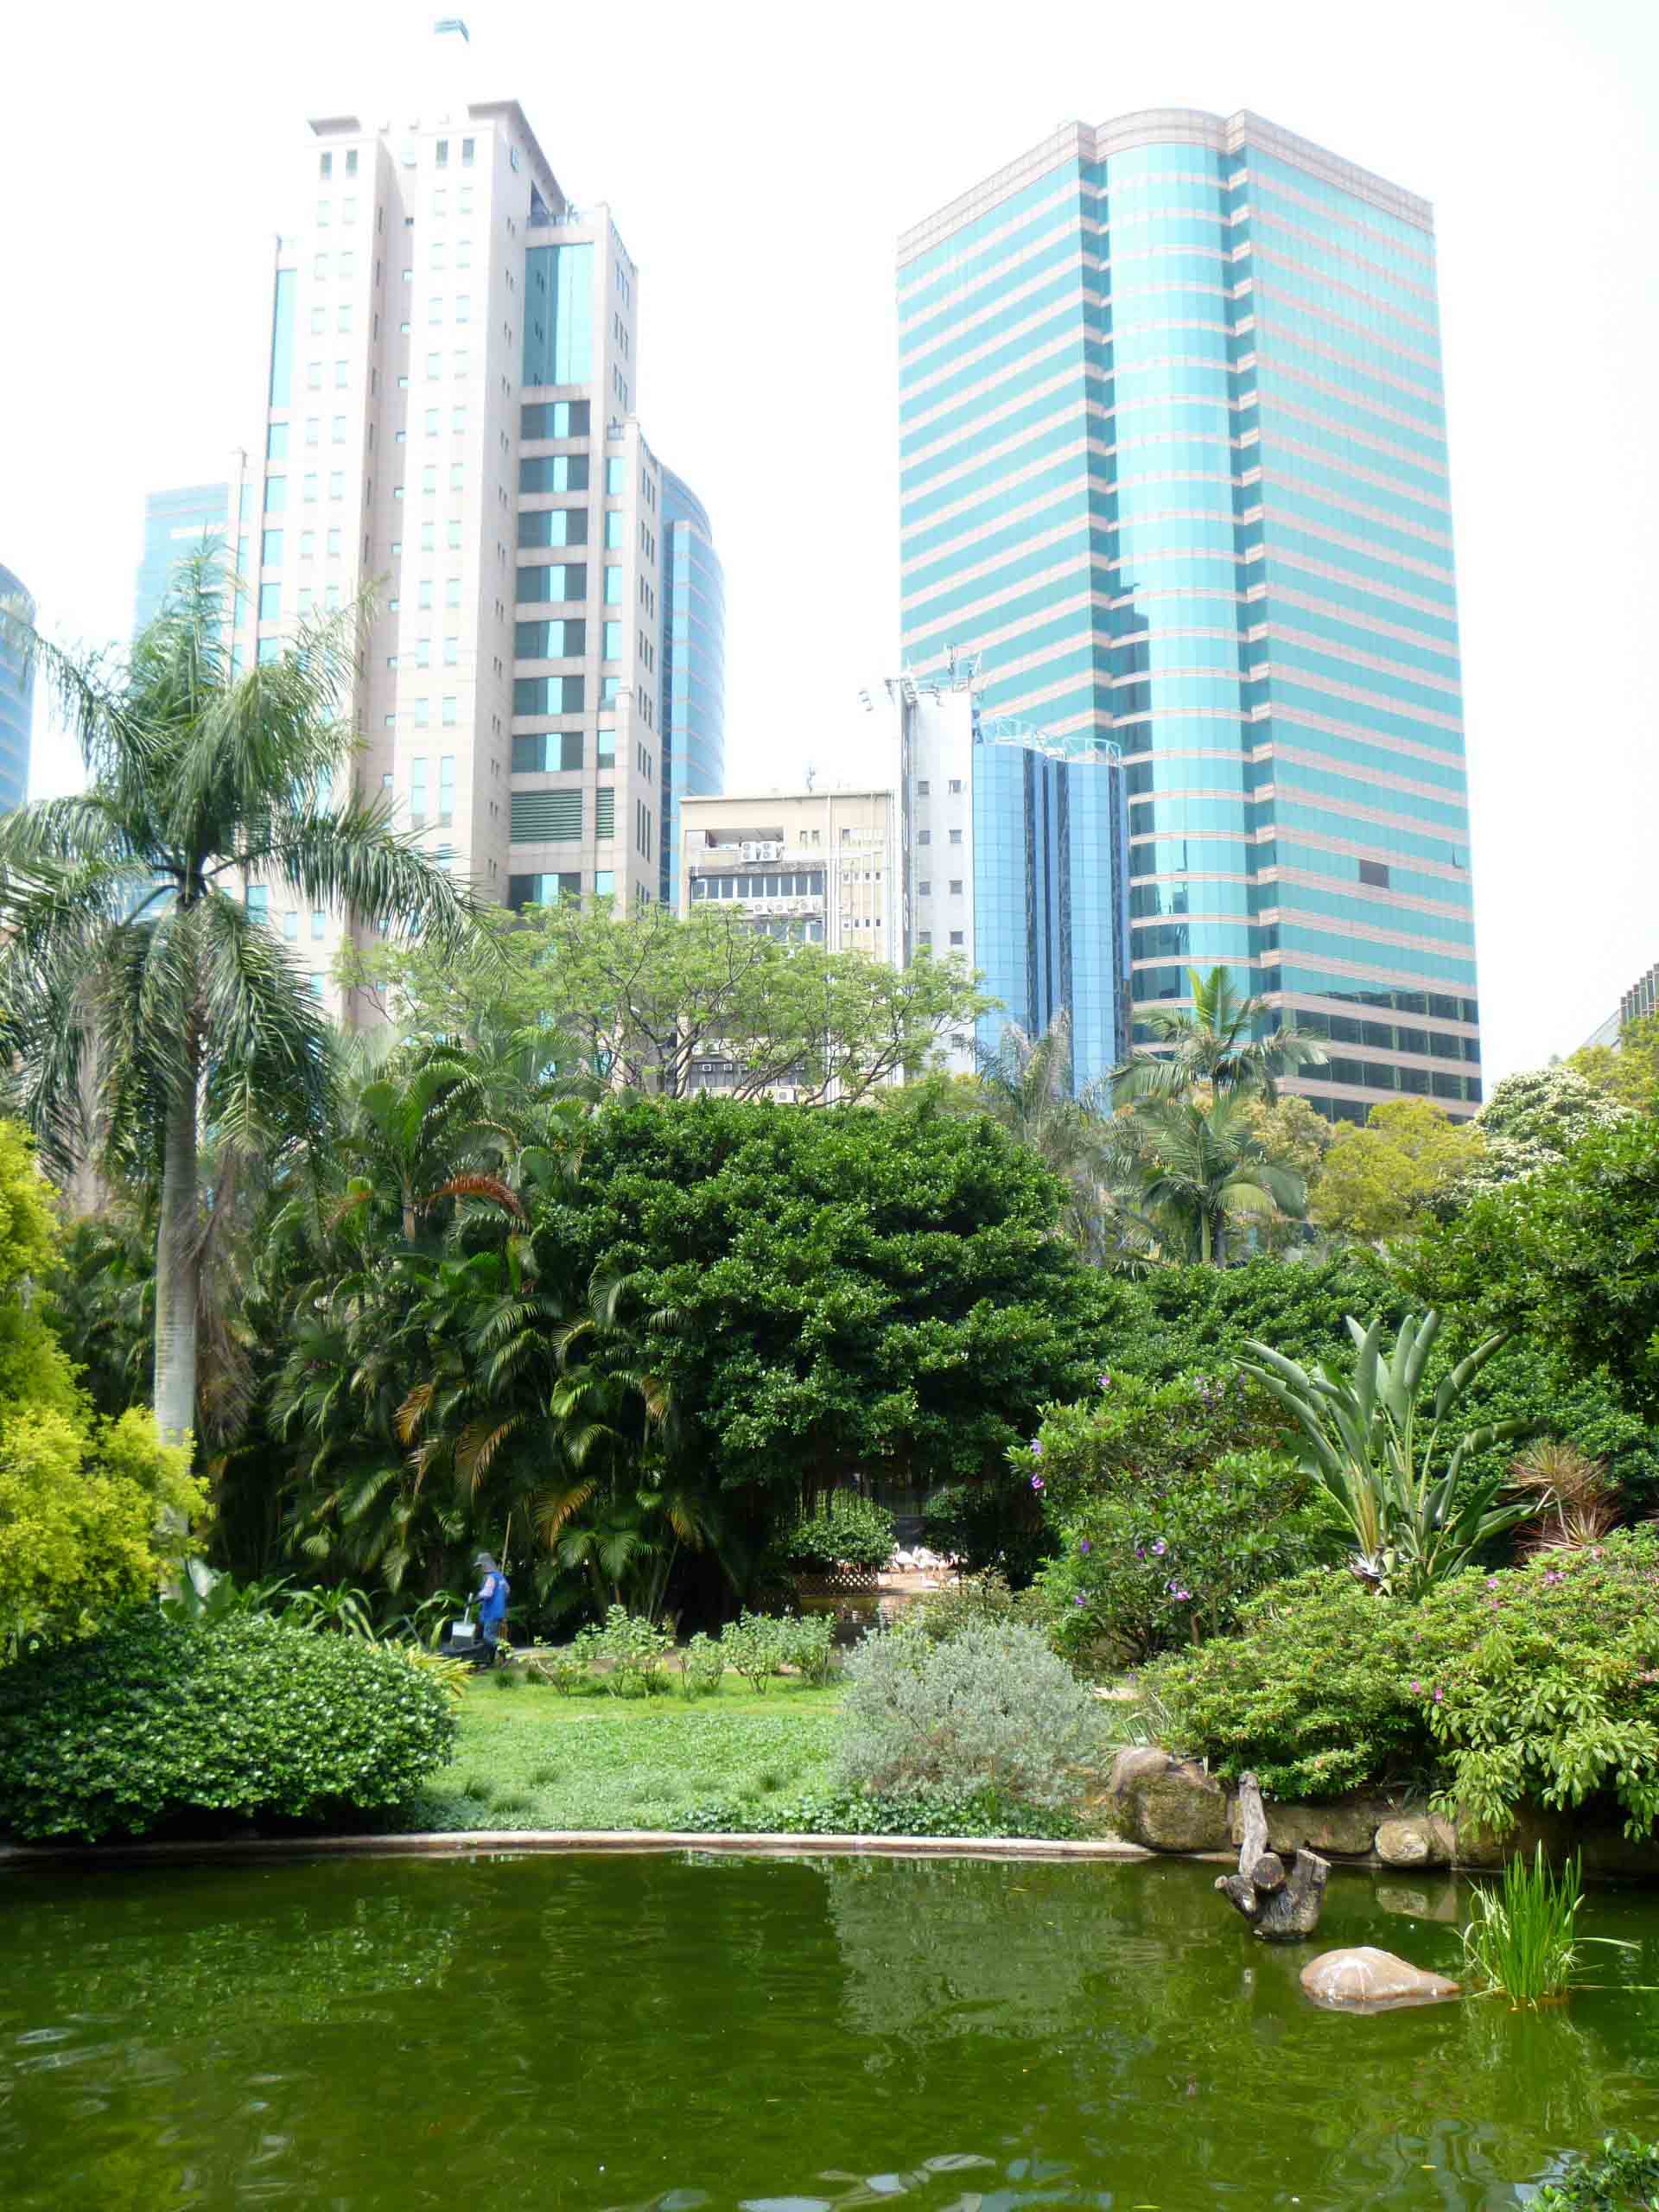 香港岛最受欢迎的公园